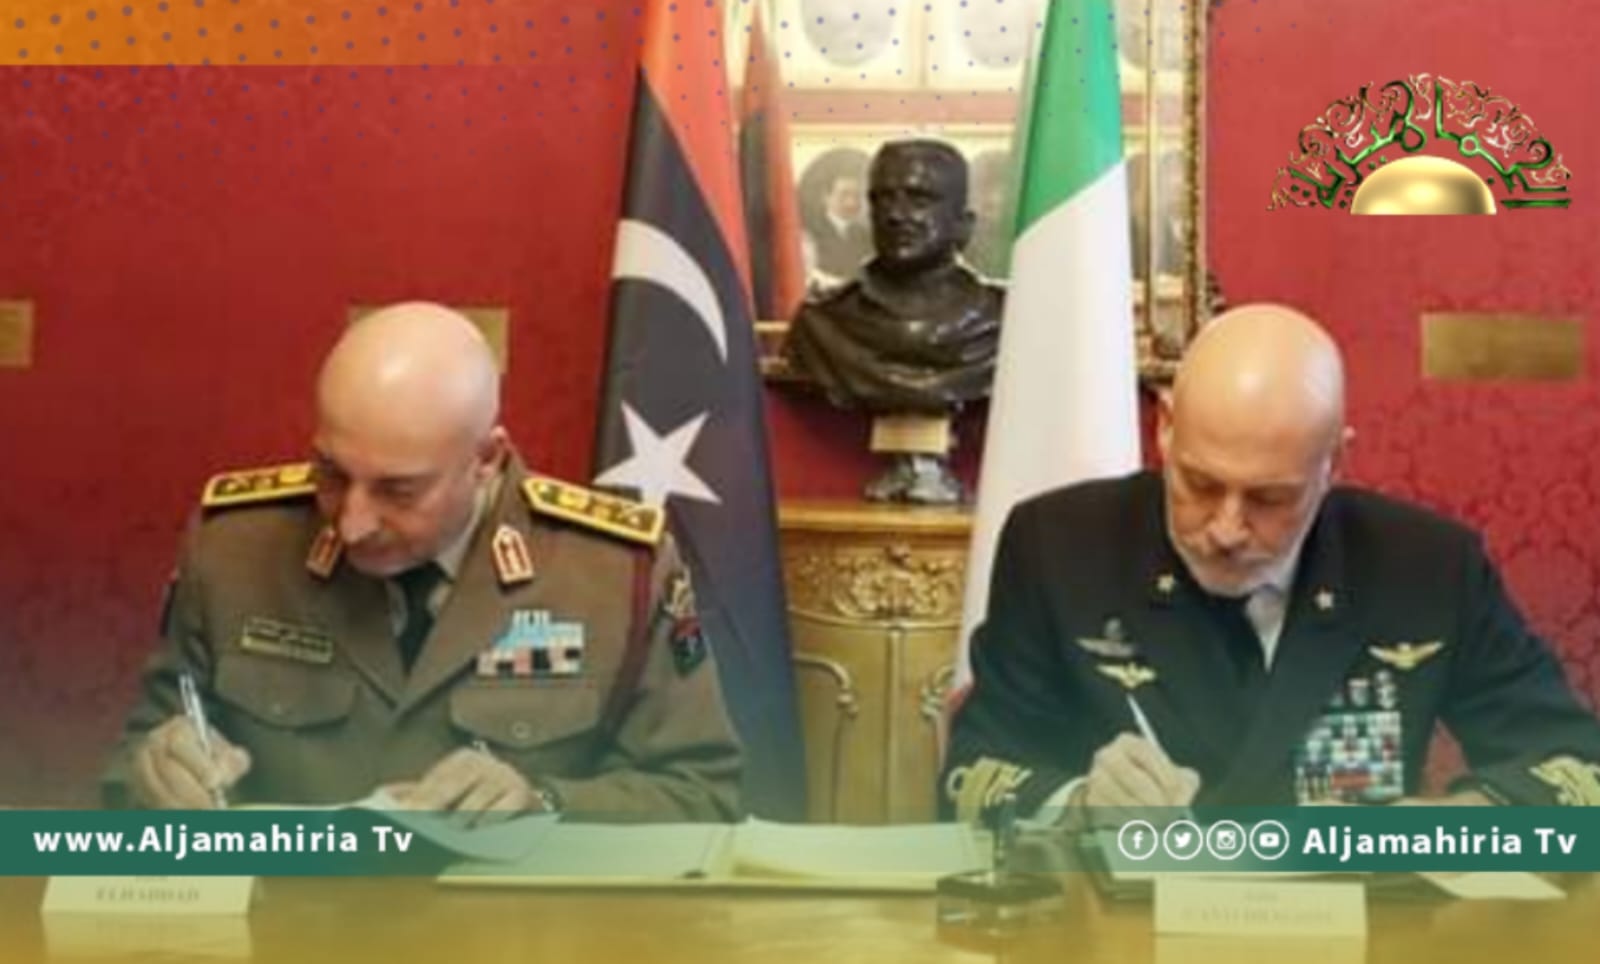 وكالة نوفا للأنباء: توقيع اتفاقية بين إيطاليا وليبيا لتدريب القوات الخاصة